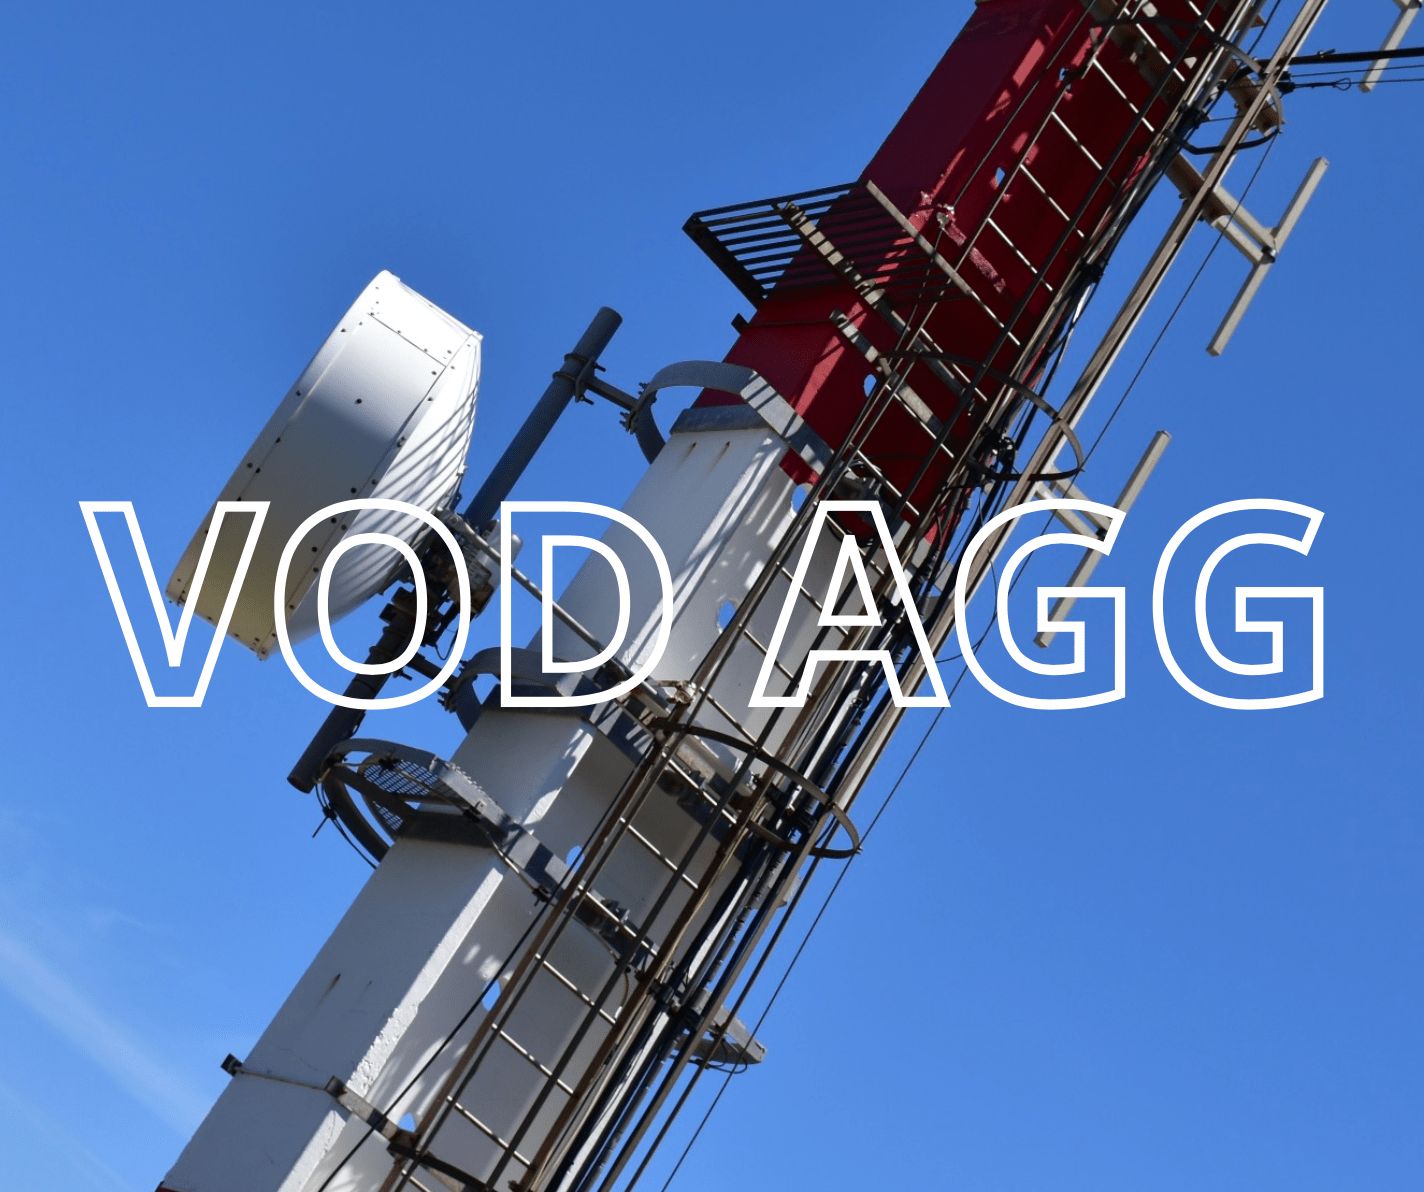 VOD AGG - Corso di aggiornamento sul rischio di caduta dall'alto, uso di DPI contro le cadute specifico per tecnici di impianti radio-telefonia